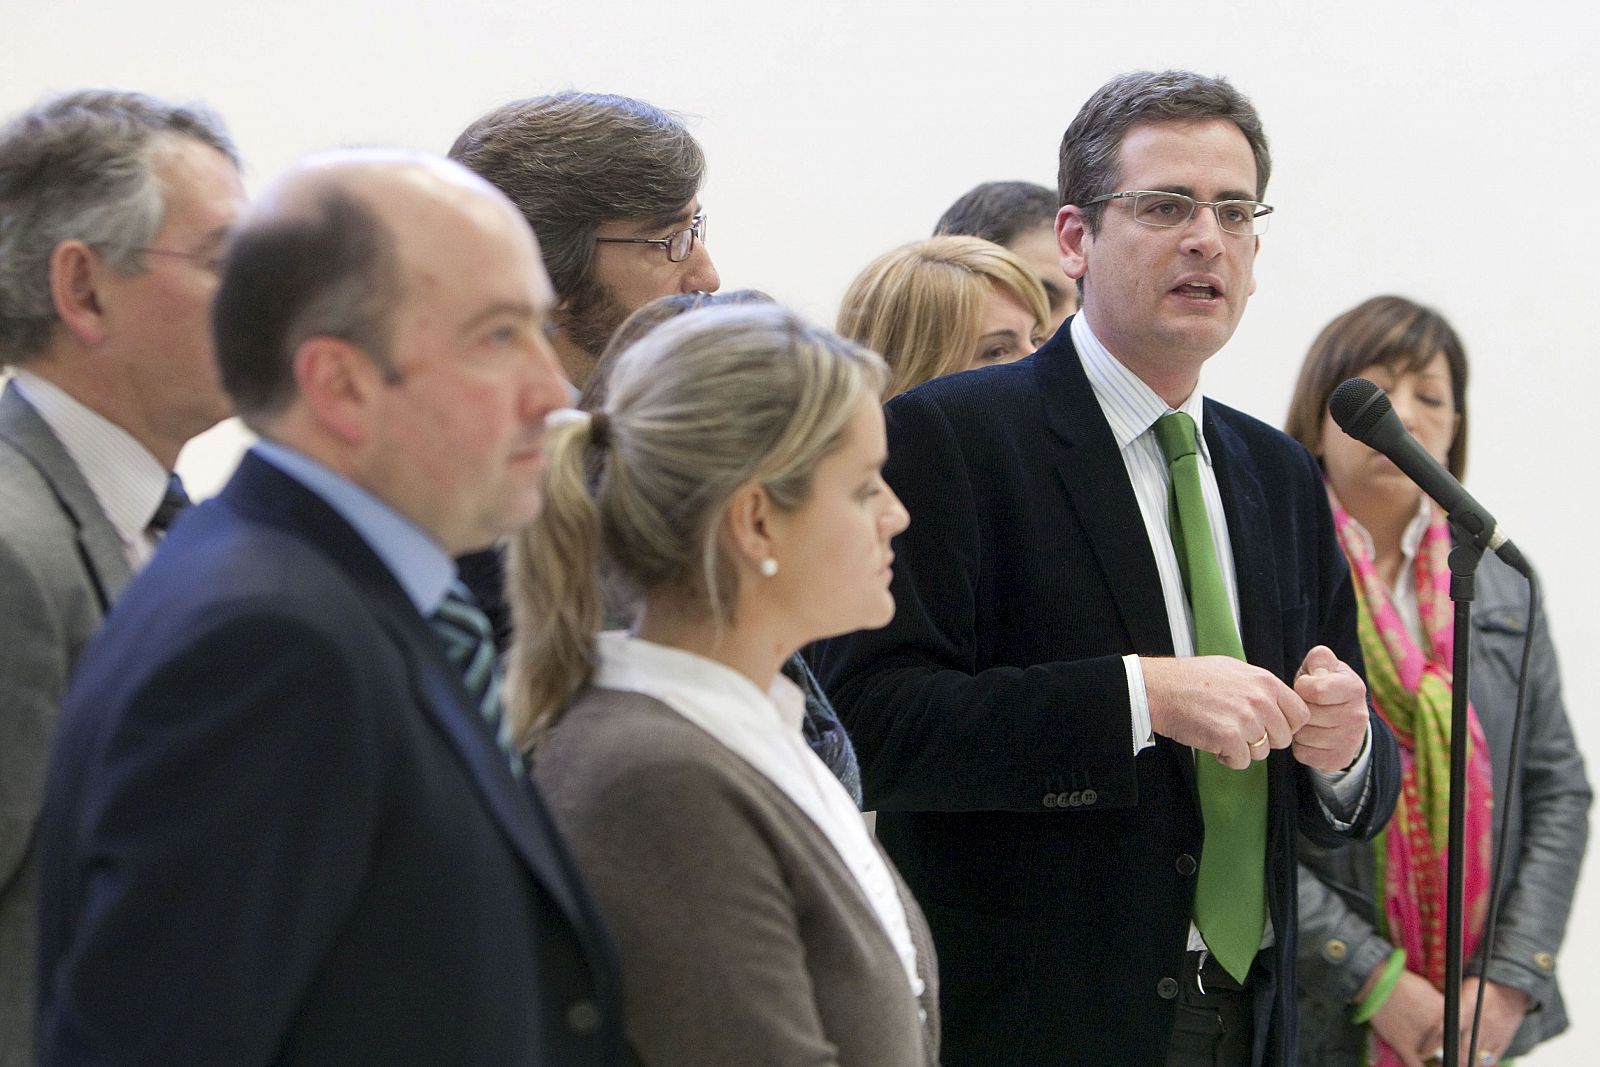 El presidente del PP del País Vasco, Antonio Basagoiti, junto a sus compañeros de grupo, se dirige a los medios de comunicación tras acreditarse ante la Cámara.